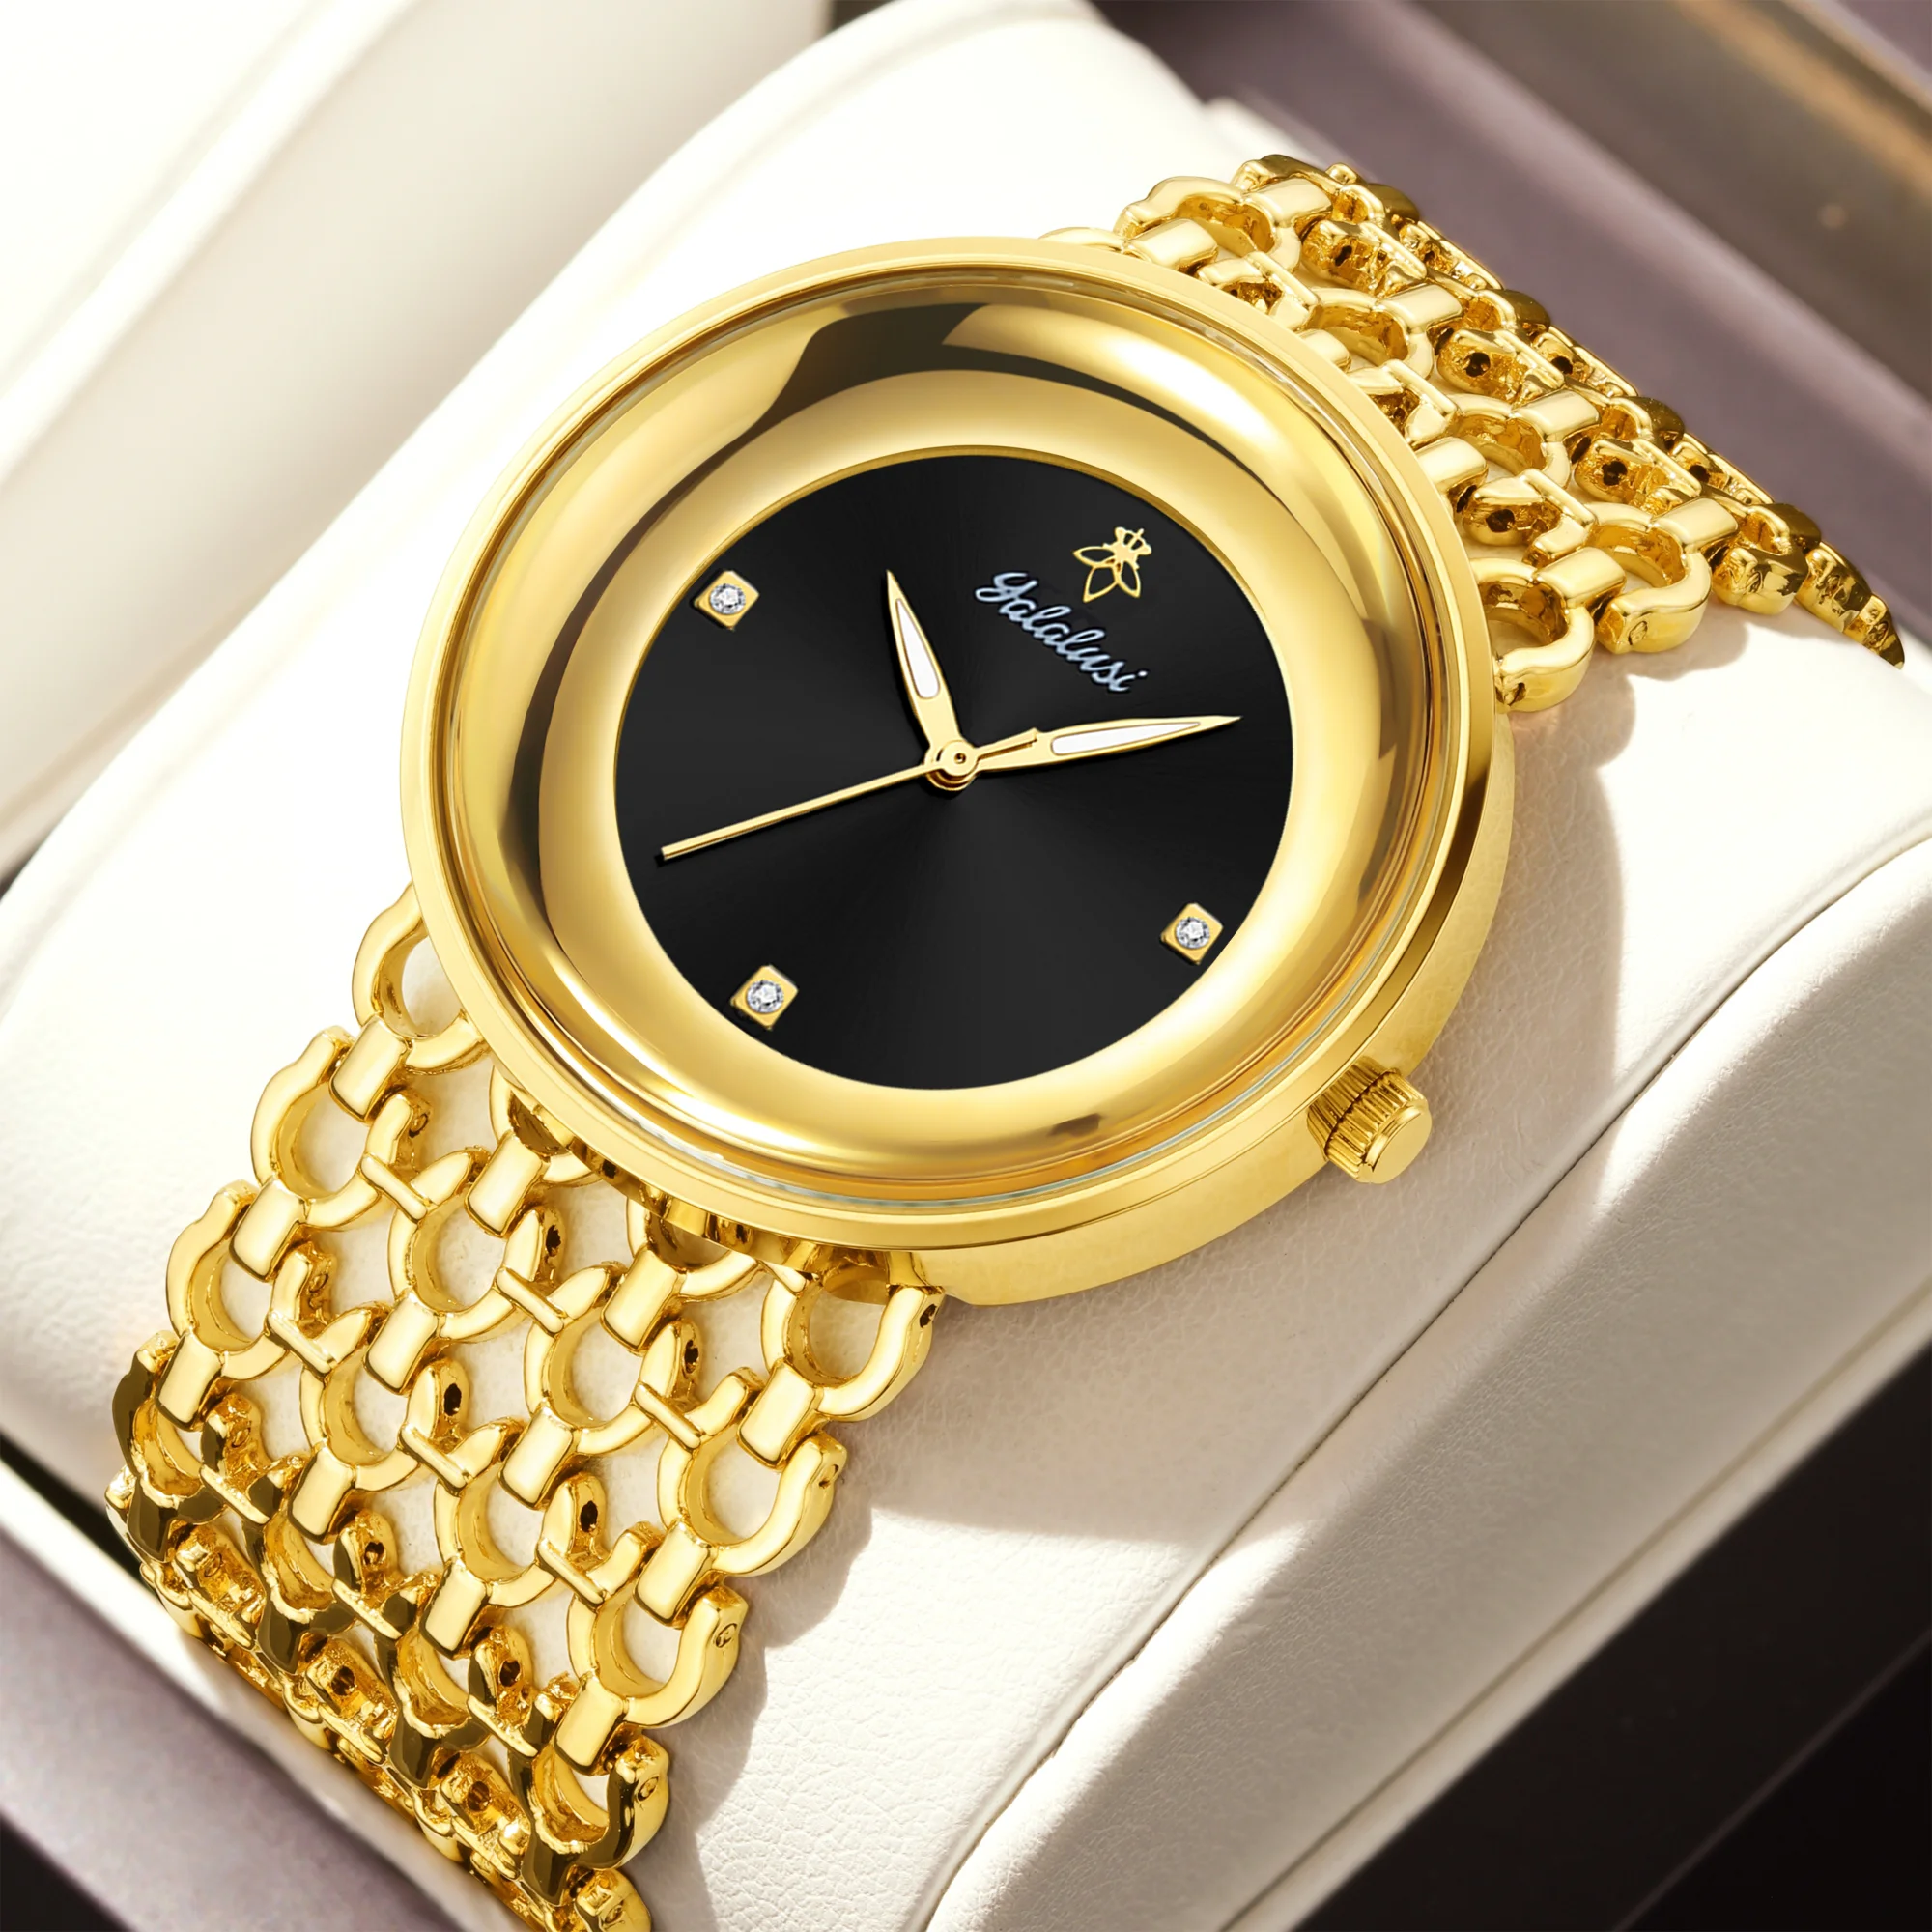 

YaLaLuSi женские кварцевые часы золотые Роскошные роскошные рекламные часы-скелетоны дизайнерские коробки для часов с ионным покрытием